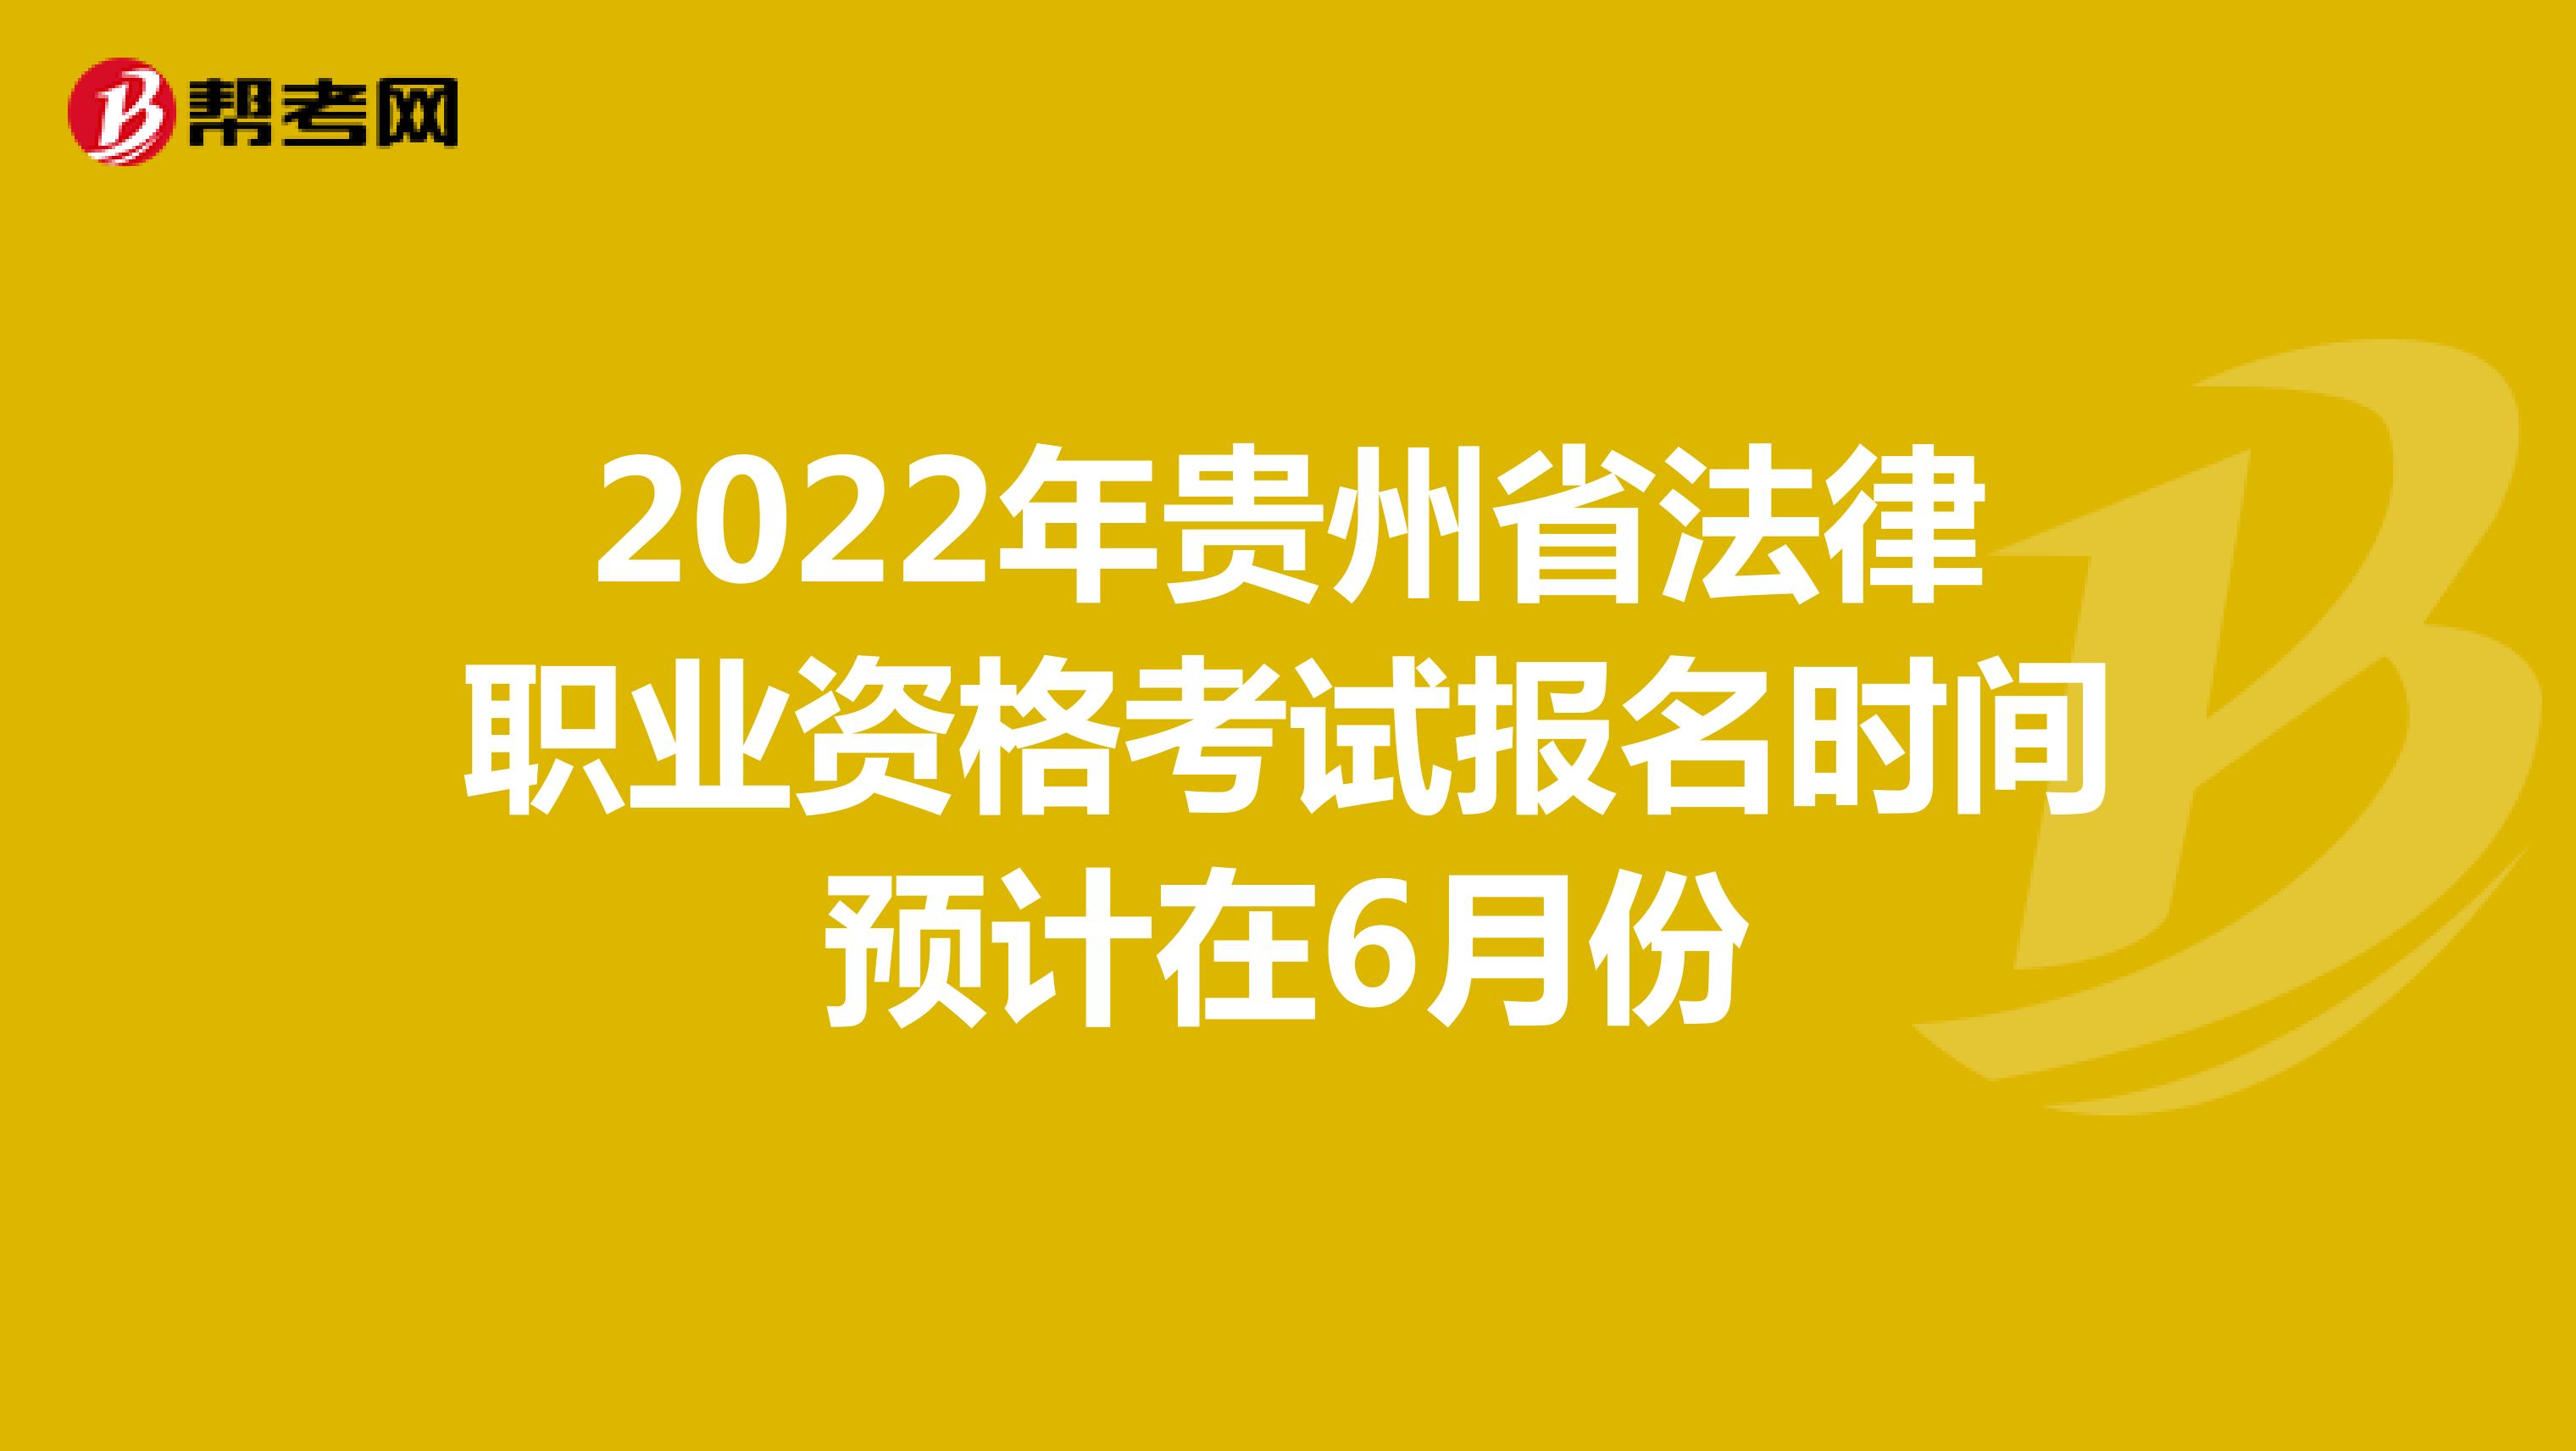 2022年贵州省法律职业资格考试报名时间预计在6月份